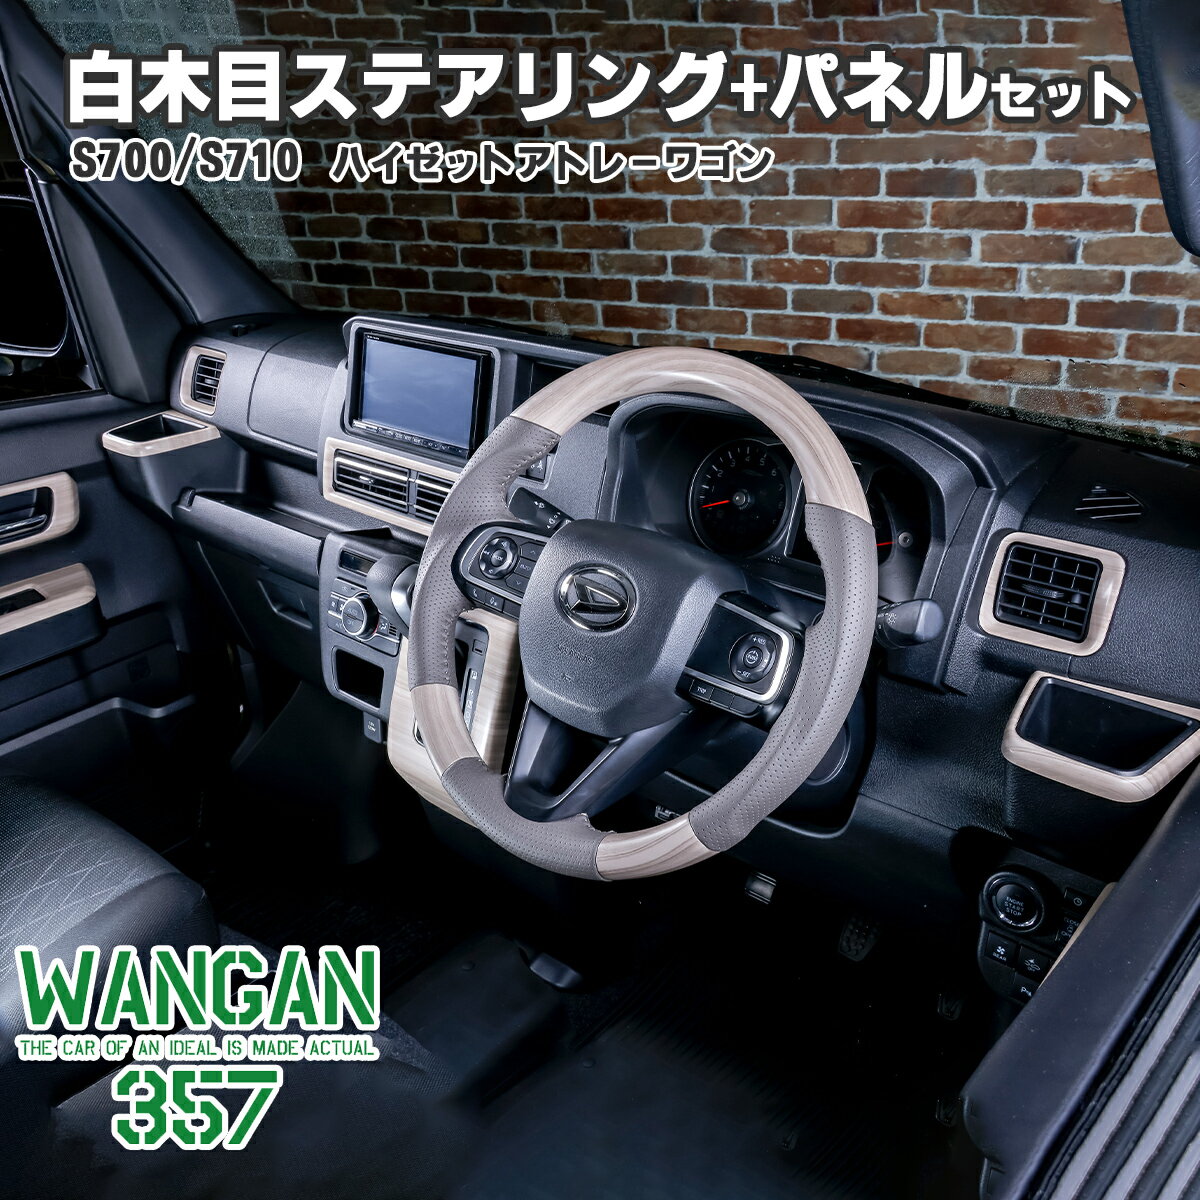 WANGAN357 S700W S710V アトレーワゴン S700V S710V ハイゼットカーゴ 白木目ウッド ステアリング コンビ ハンドル インテリアパネル 357b089-090 1